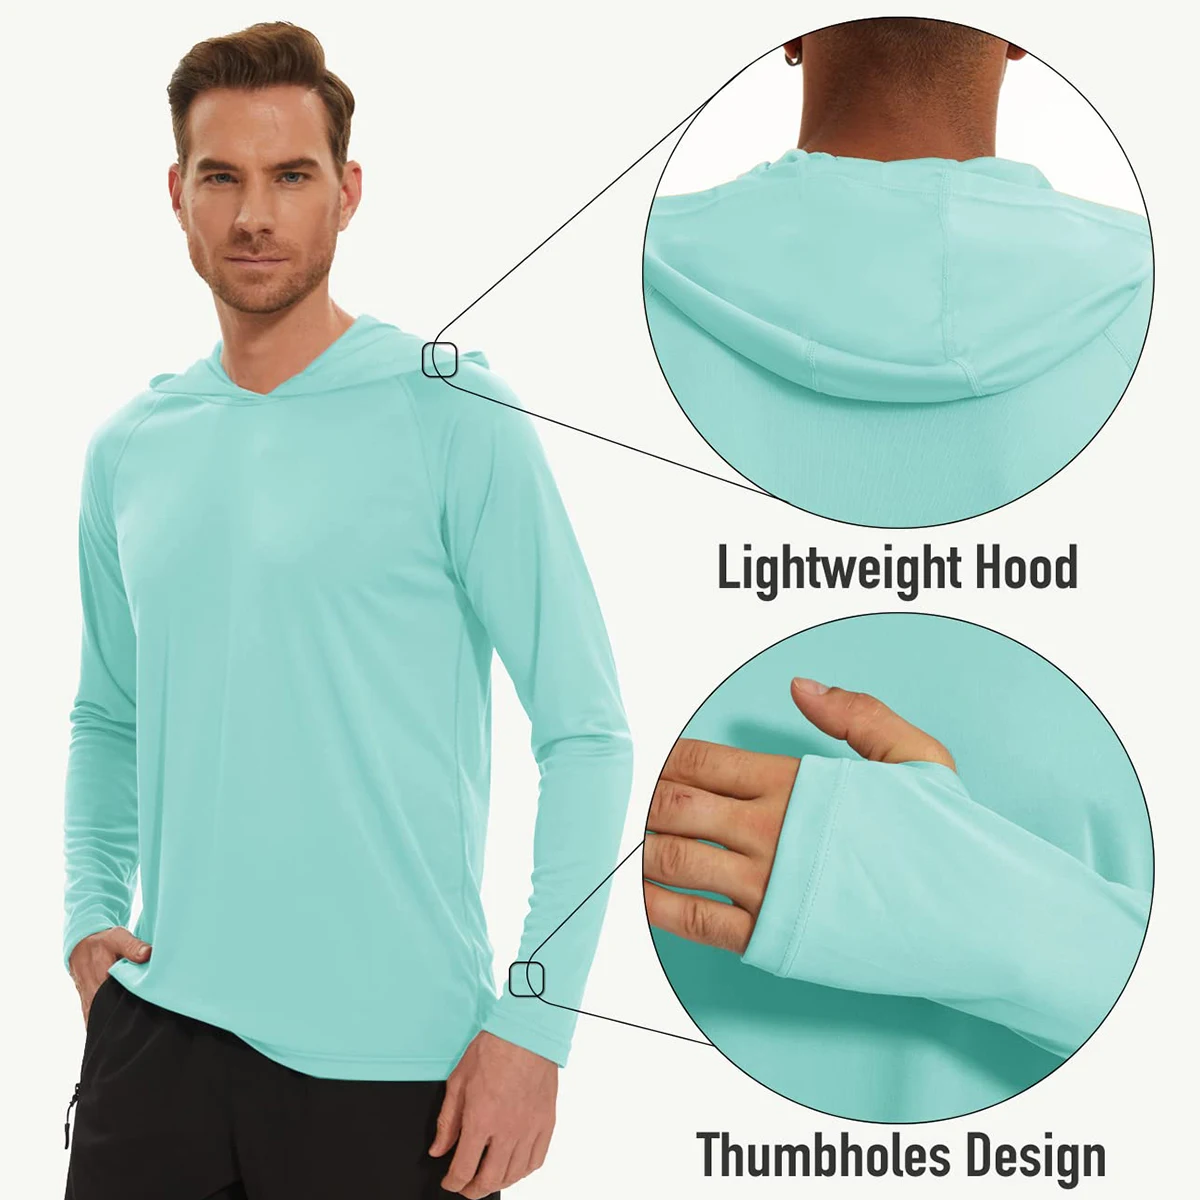 https://ae01.alicdn.com/kf/S86459a5a76a44bdab84e6b53c745b7a9m/MAGCOMSEN-Men-s-Hooded-UV-Sun-Protection-T-Shirt-UPF-50-Long-Sleeve-Quick-Dry-Hoodies.jpg